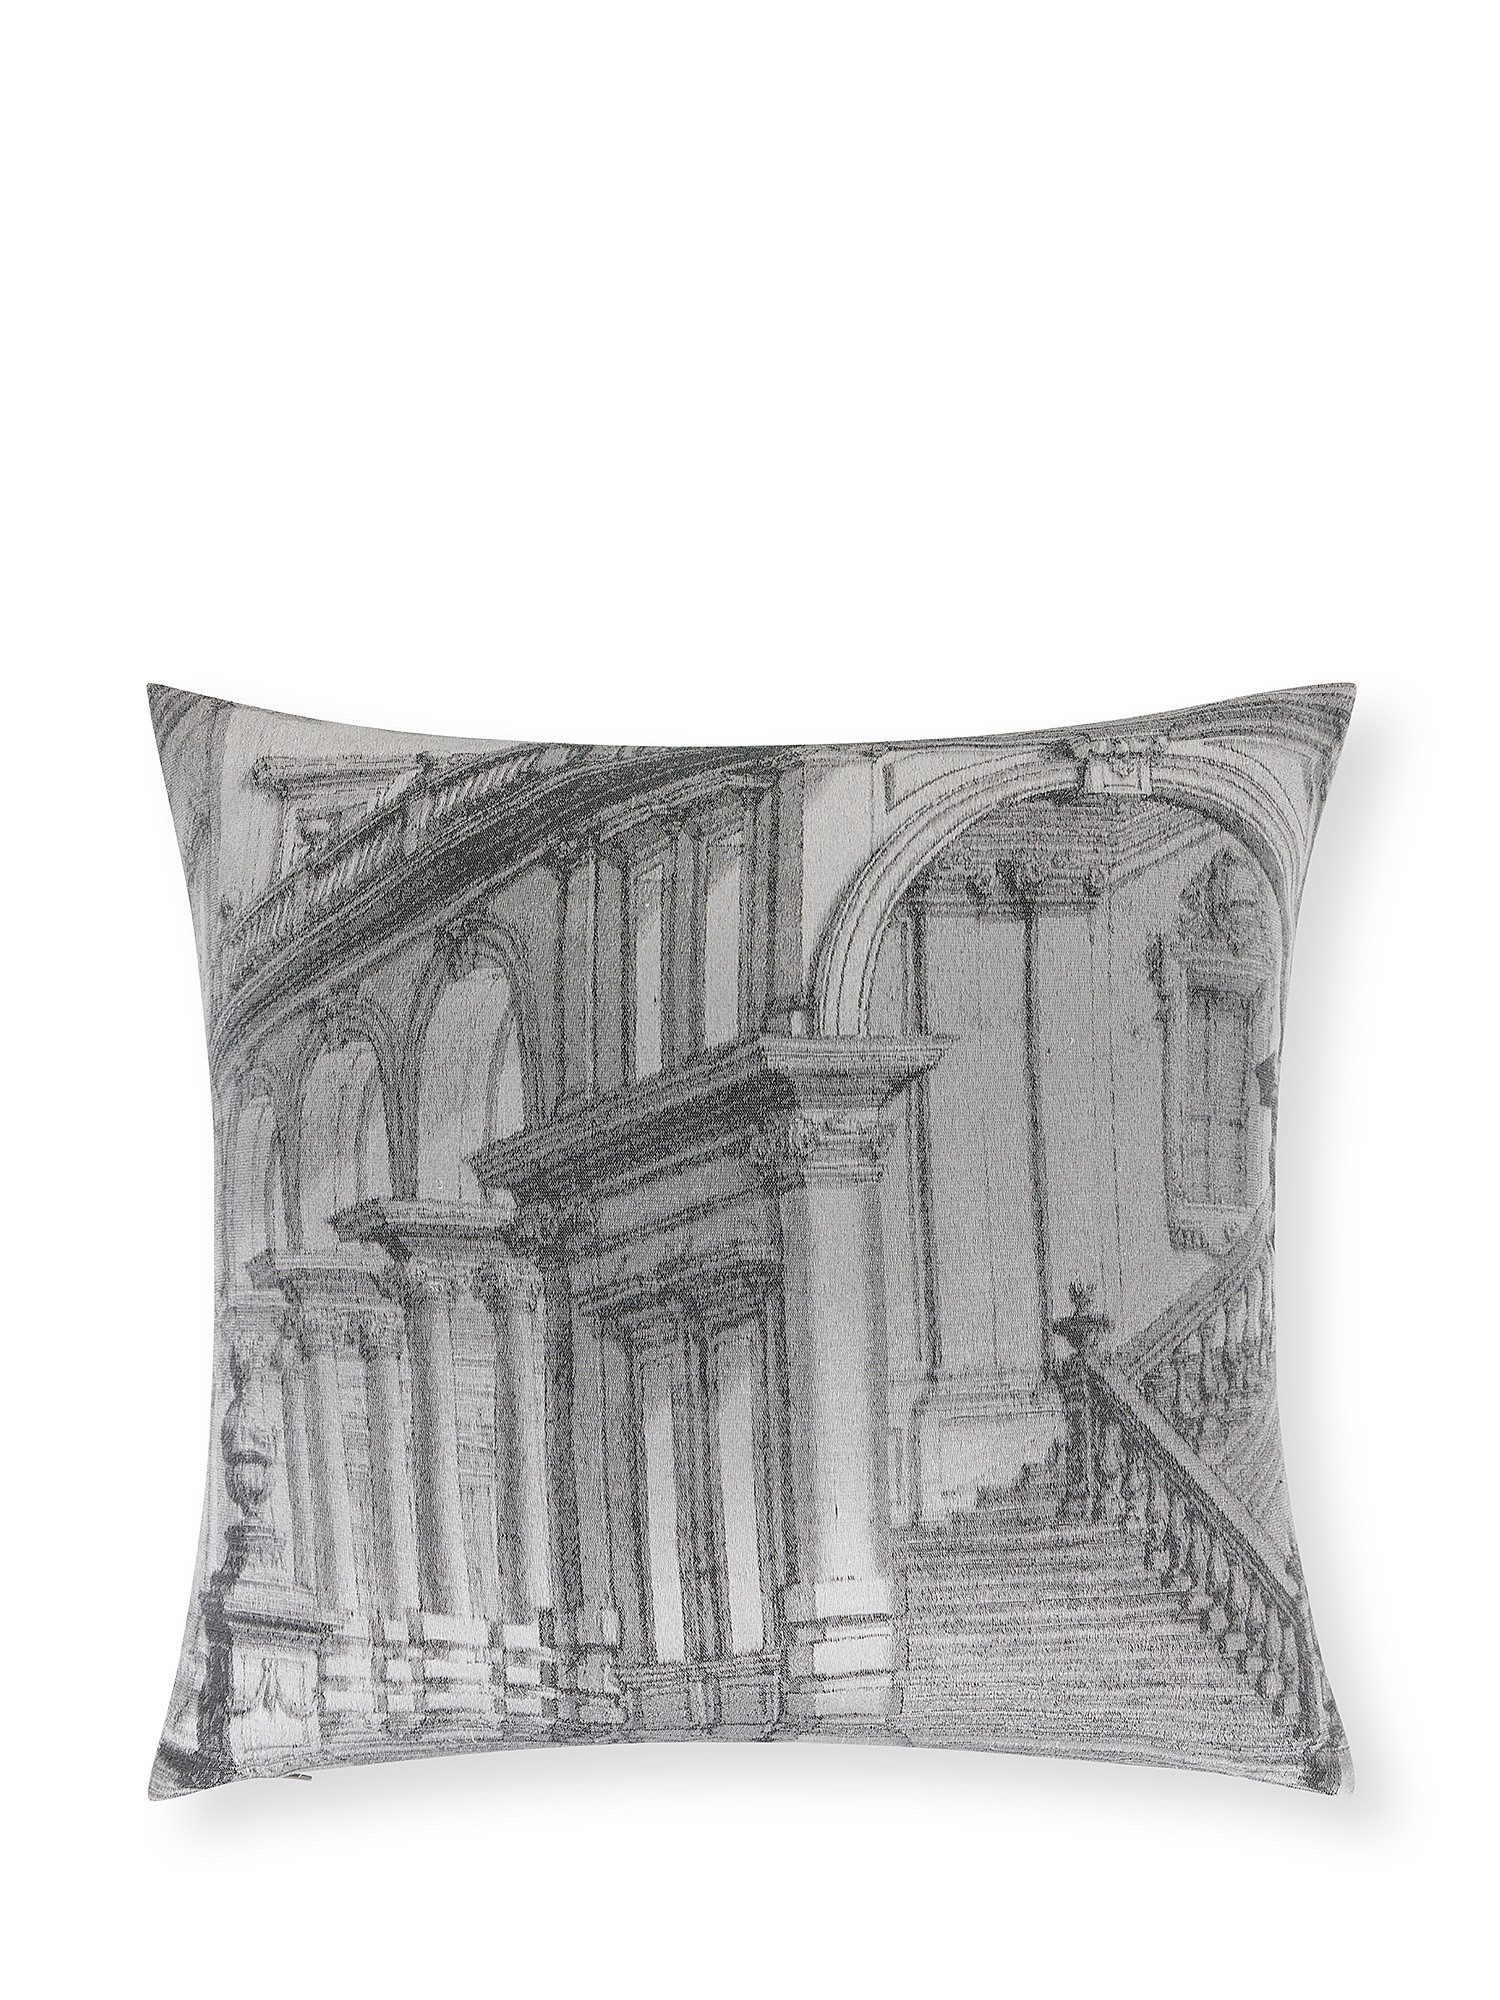 Palace motif jacquard cushion 45x45cm, Grey, large image number 0